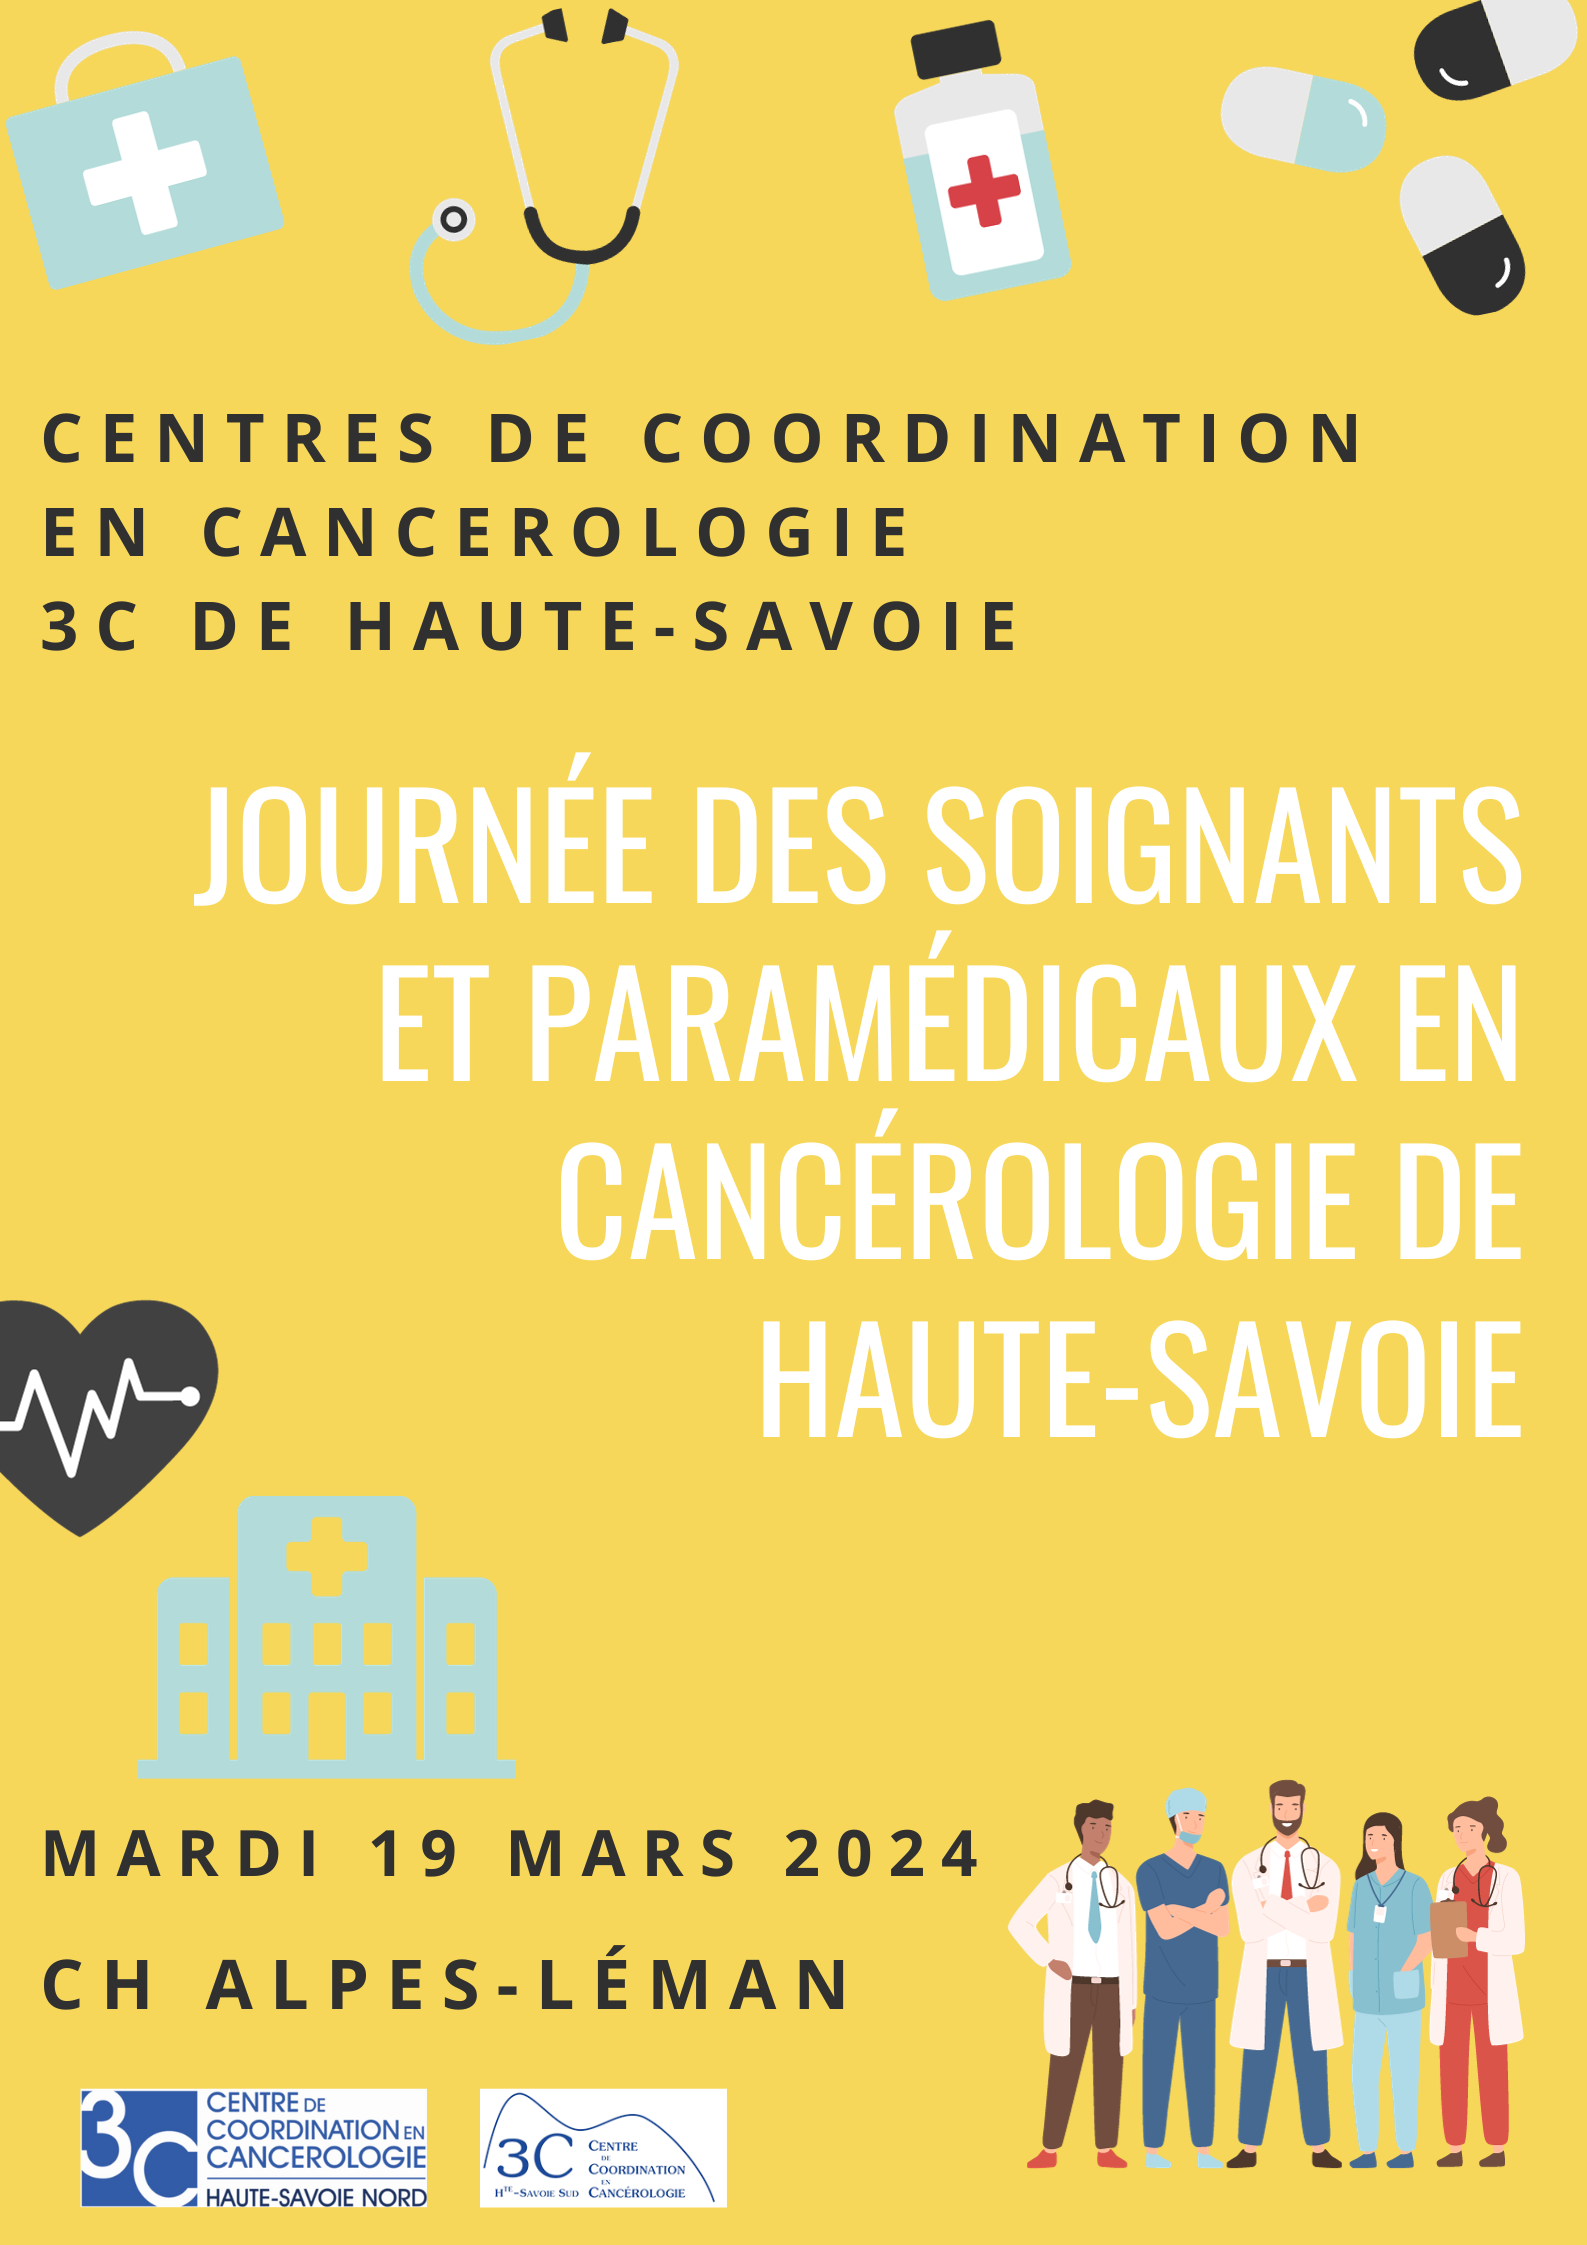 Journée des soignants et paramédicaux en cancérologie Haute-Savoie (1)